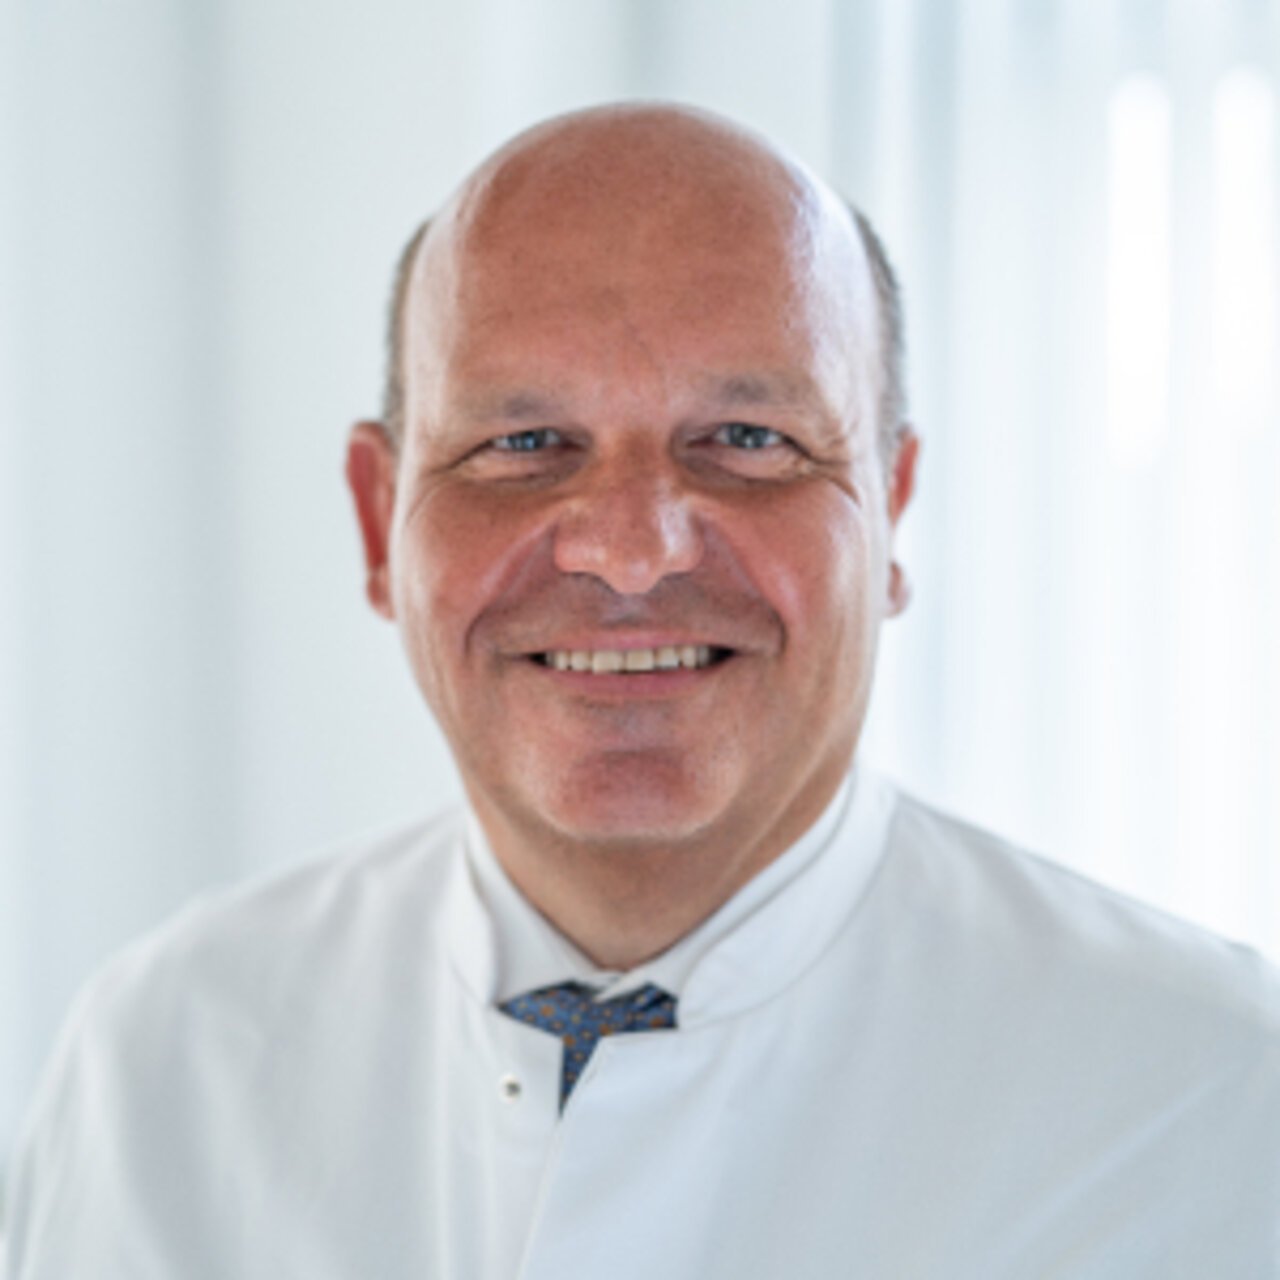 Prof. Dr méd. Frank A. Wenger - Spécialiste de Chirurgie bariatrique - Portrait